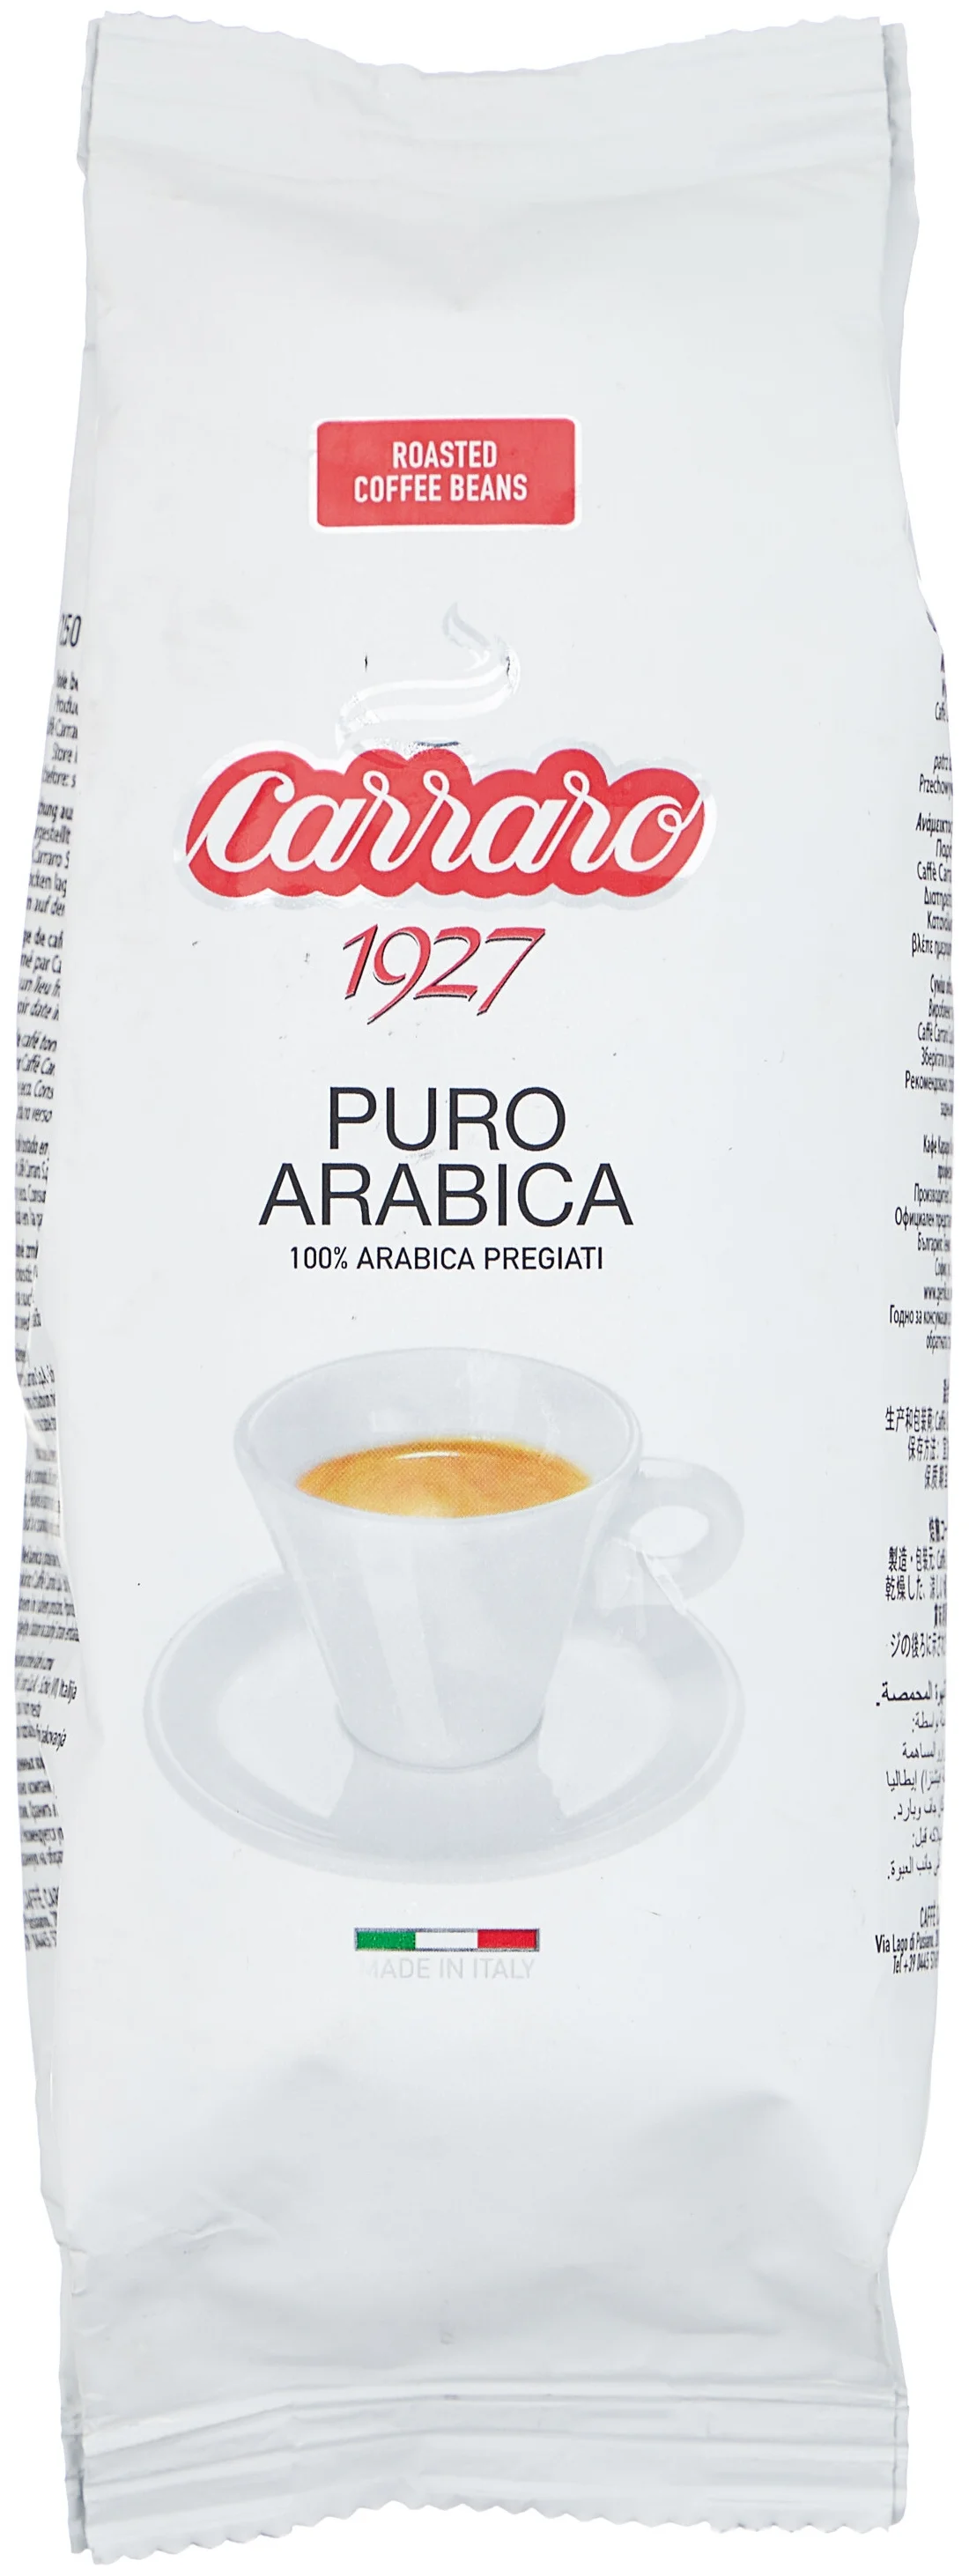 Carraro "Puro Arabica" - вид зерен: арабика